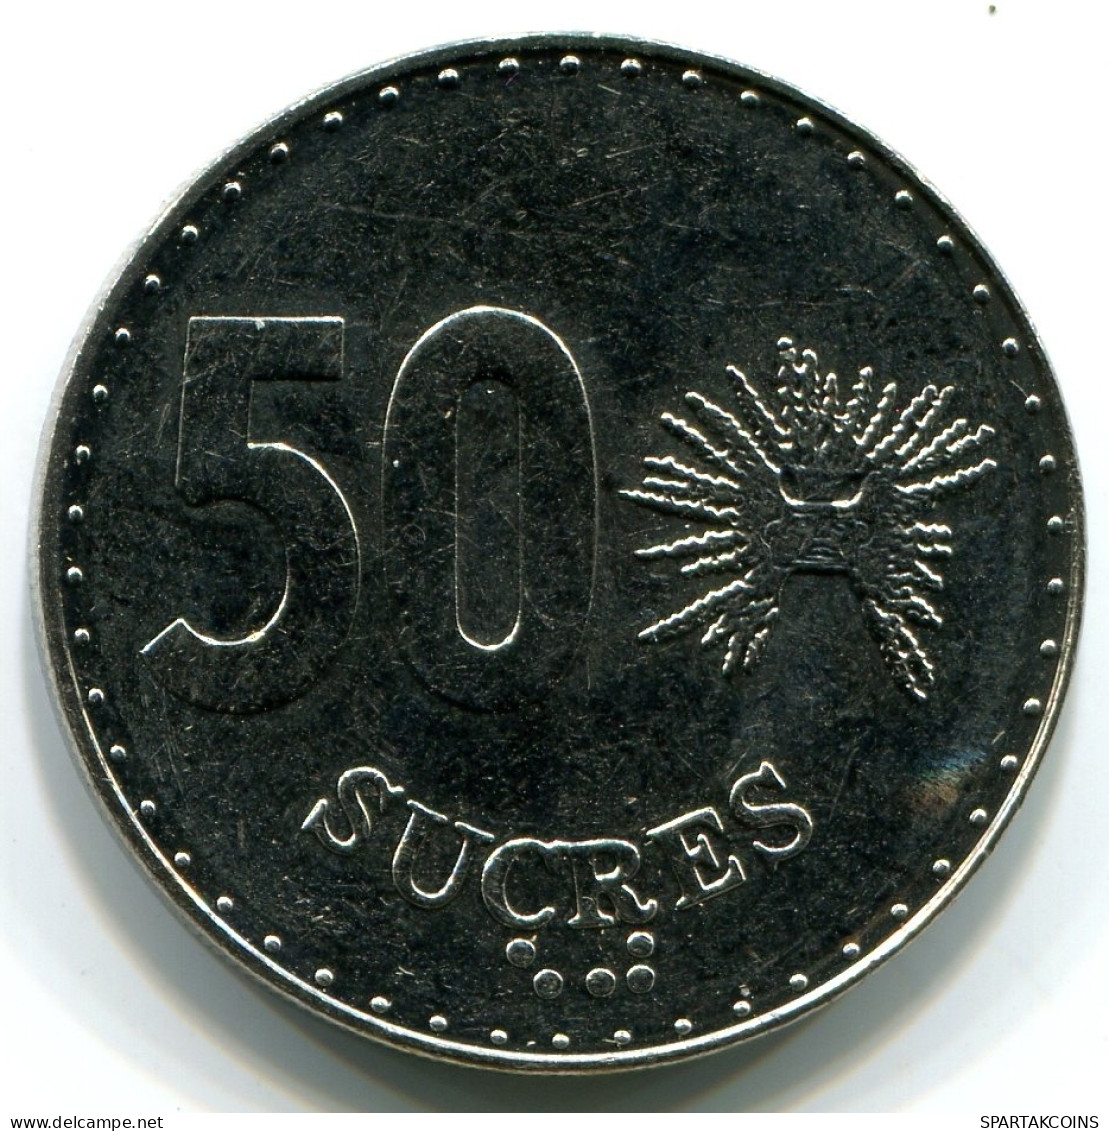 50 SUCRE 1991 ECUADOR UNC Münze #W11076.D - Ecuador